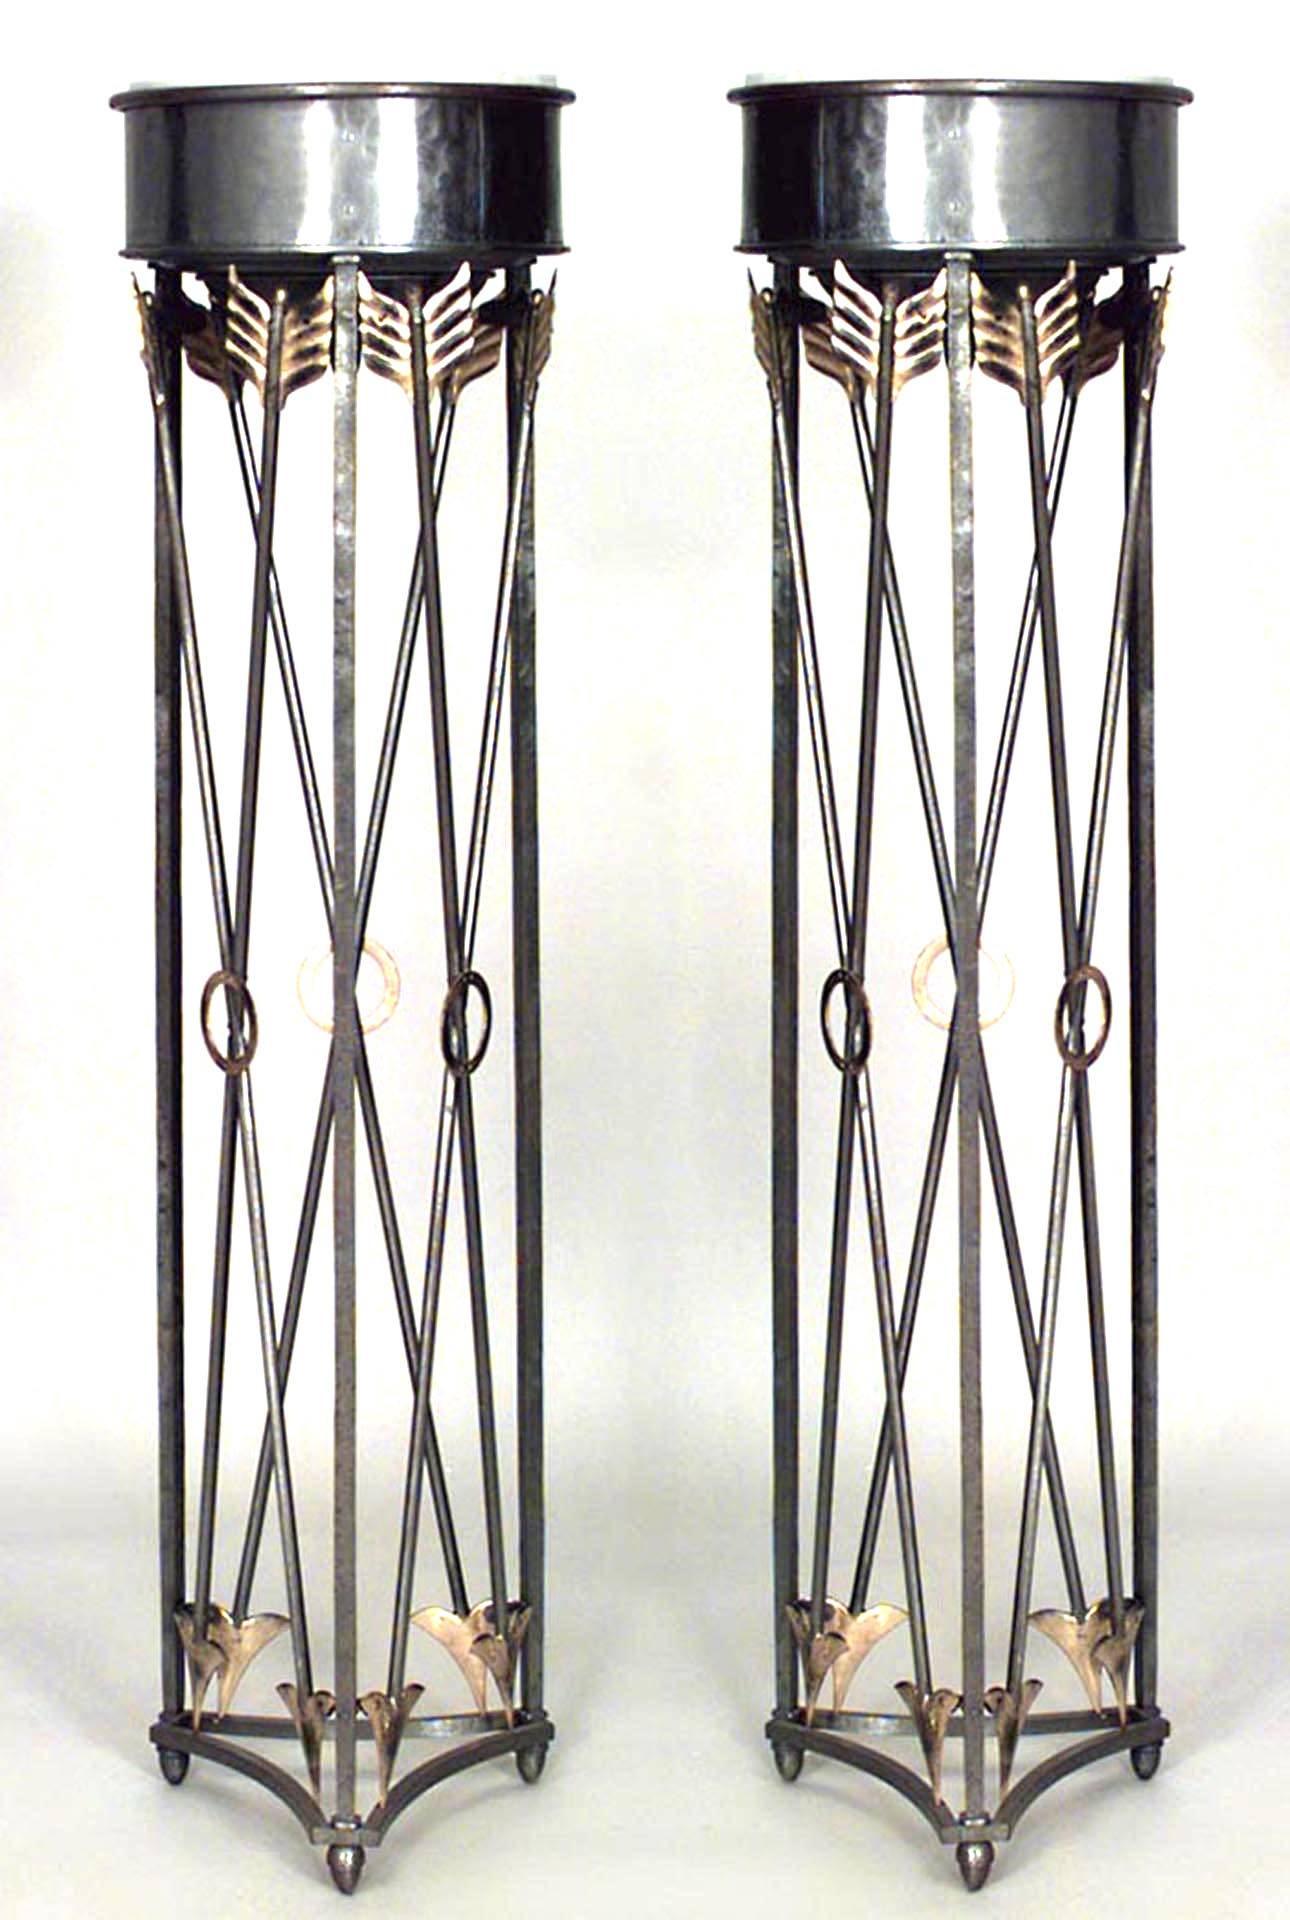 2 Paar italienische Sockel im neoklassischen Stil (19. Jh.) mit einem Kreuzpfeil aus Stahl und Messing, der eine runde weiße Marmorplatte trägt. (PREIS PRO Pärchen)
